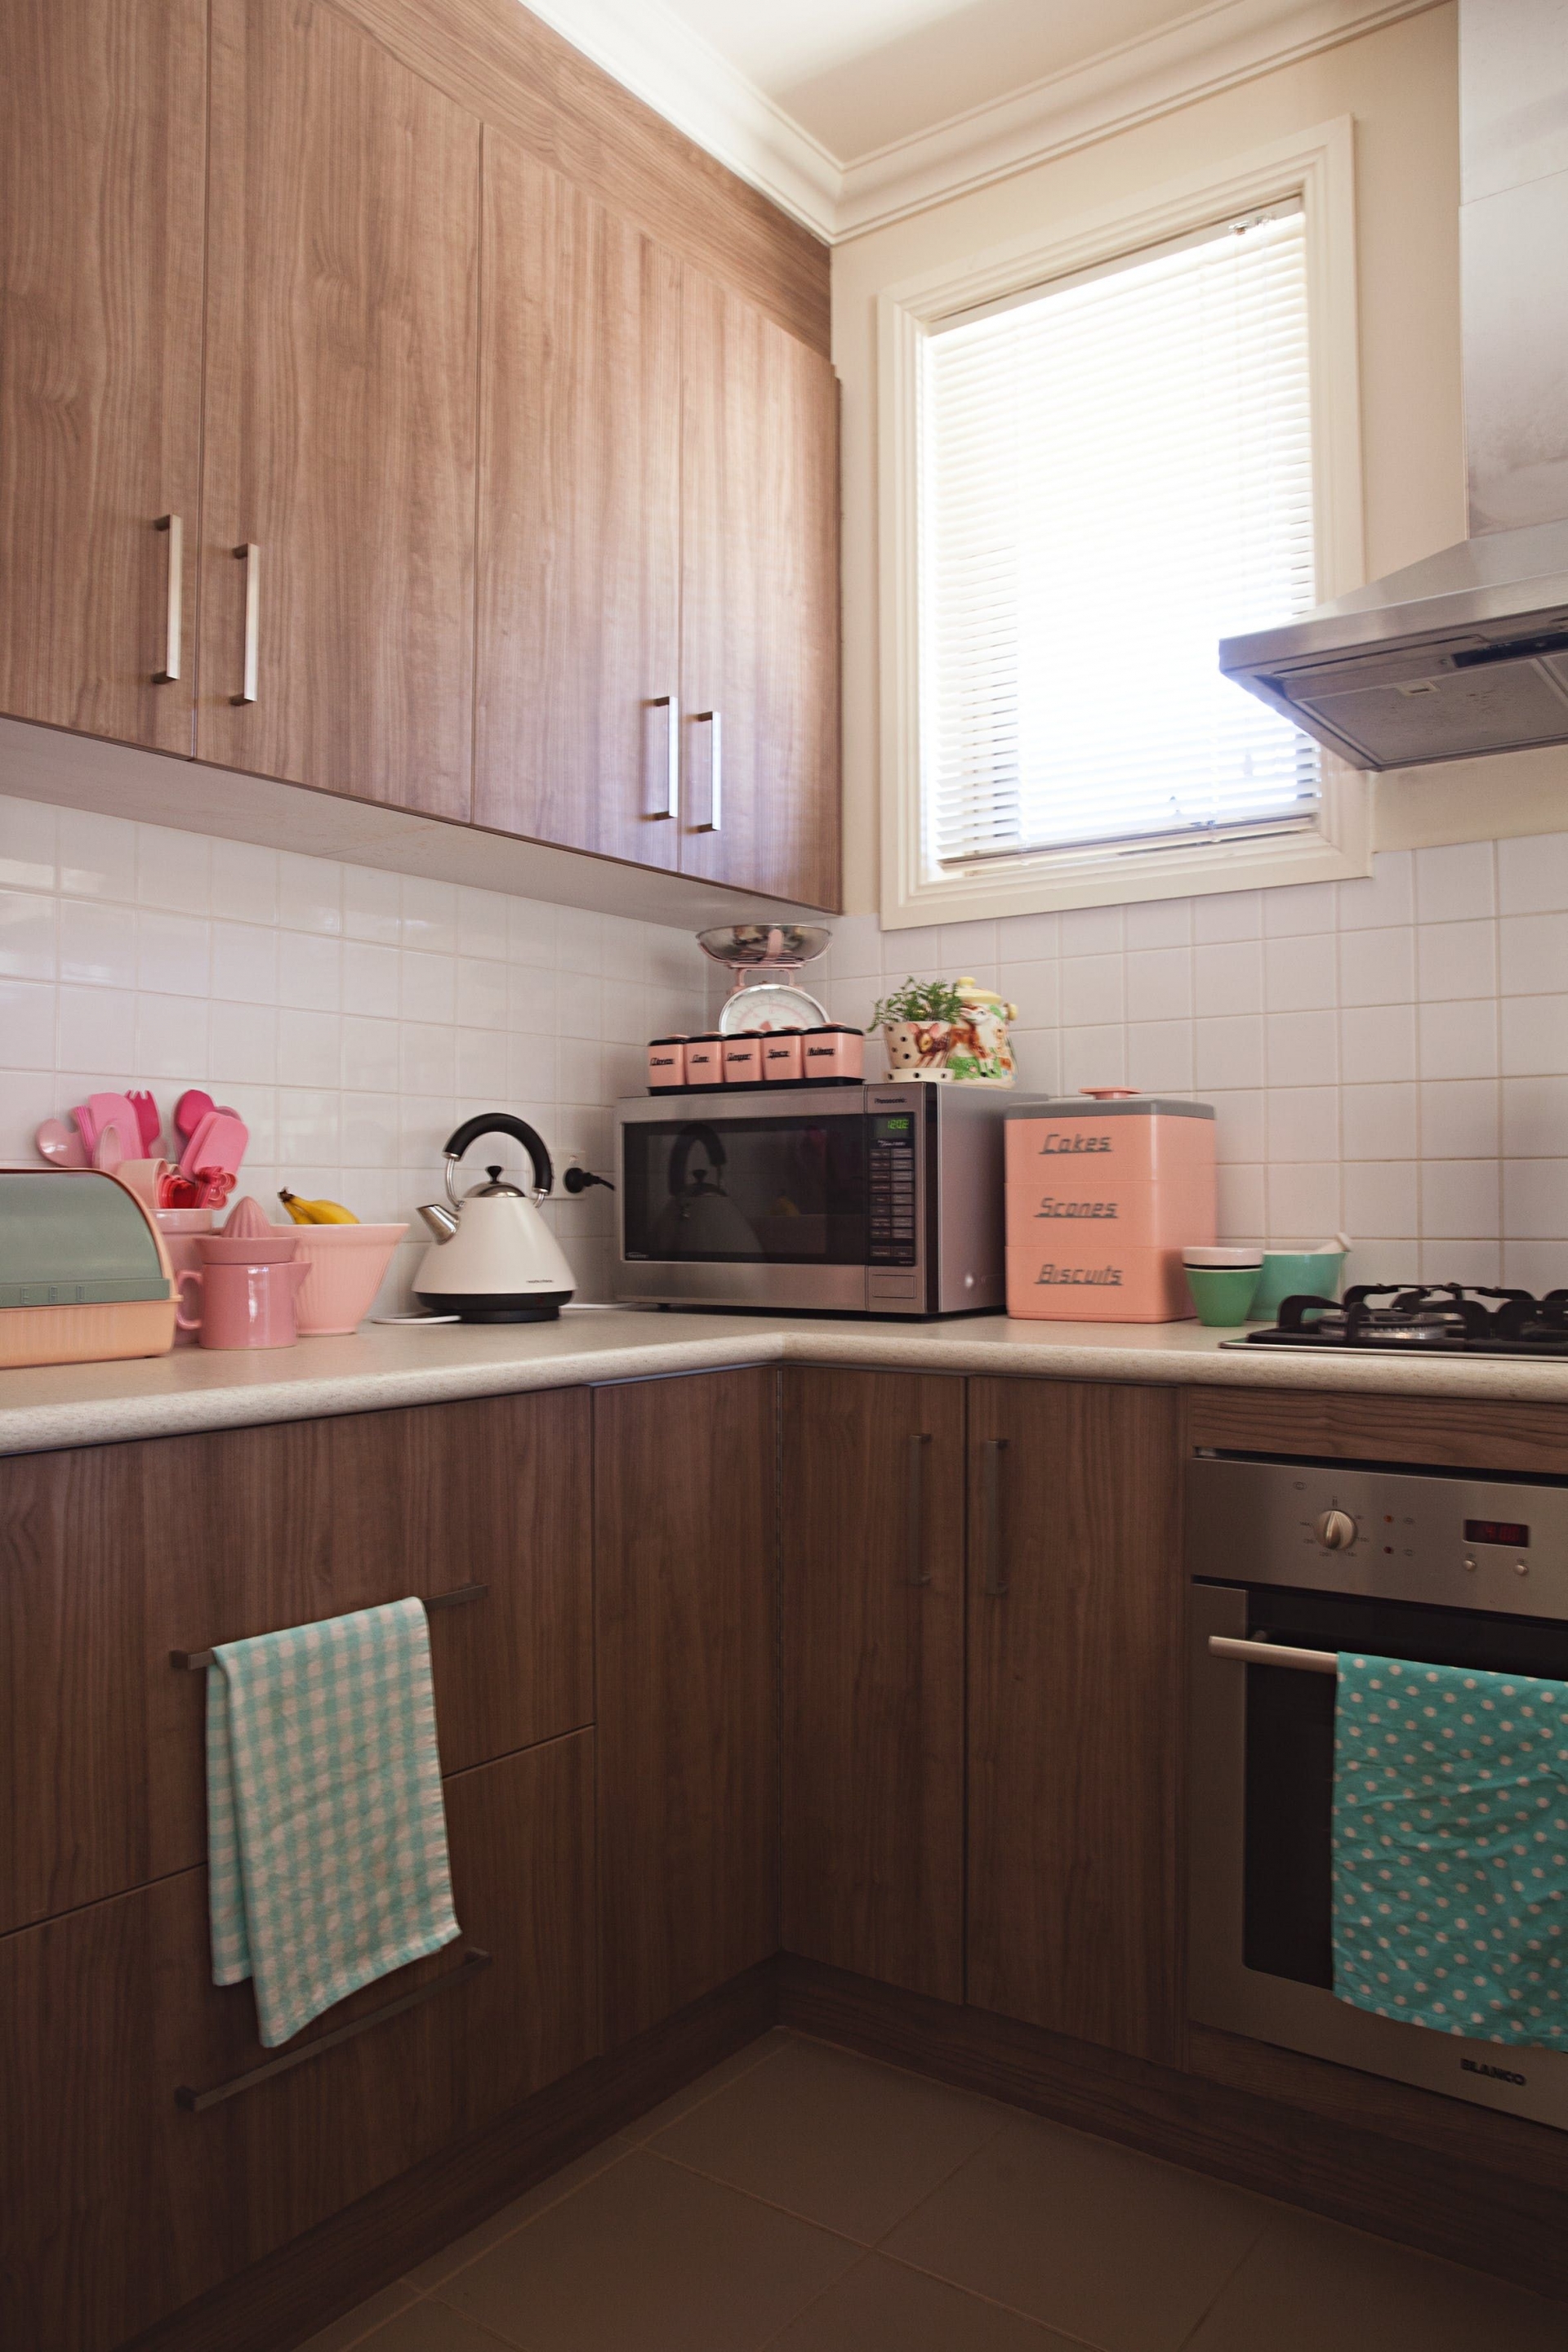 Bếp dù được ốp gỗ nhưng vẫn có thêm những đồ trang trí màu hồng. Đây vừa là điểm nhấn, vừa tạo sự thống nhất về phong cách trong nhà.